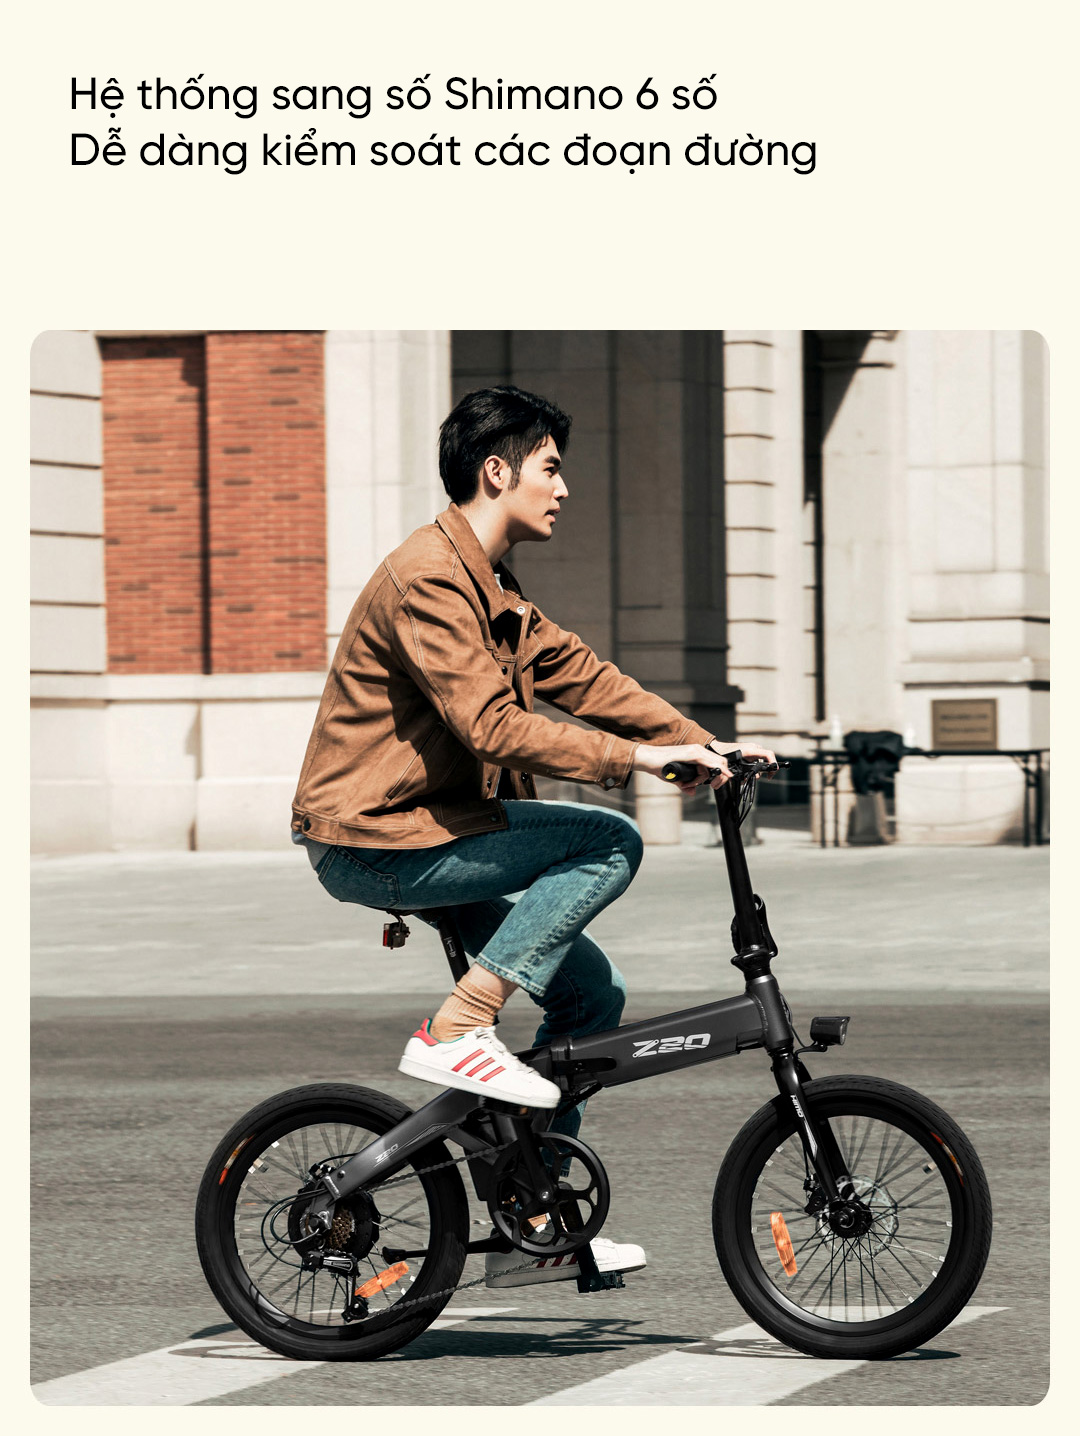 Xe đạp điện Himo Z20 cải tiến , đem lại nhiều trải nghiệm thú vị cho người dùng